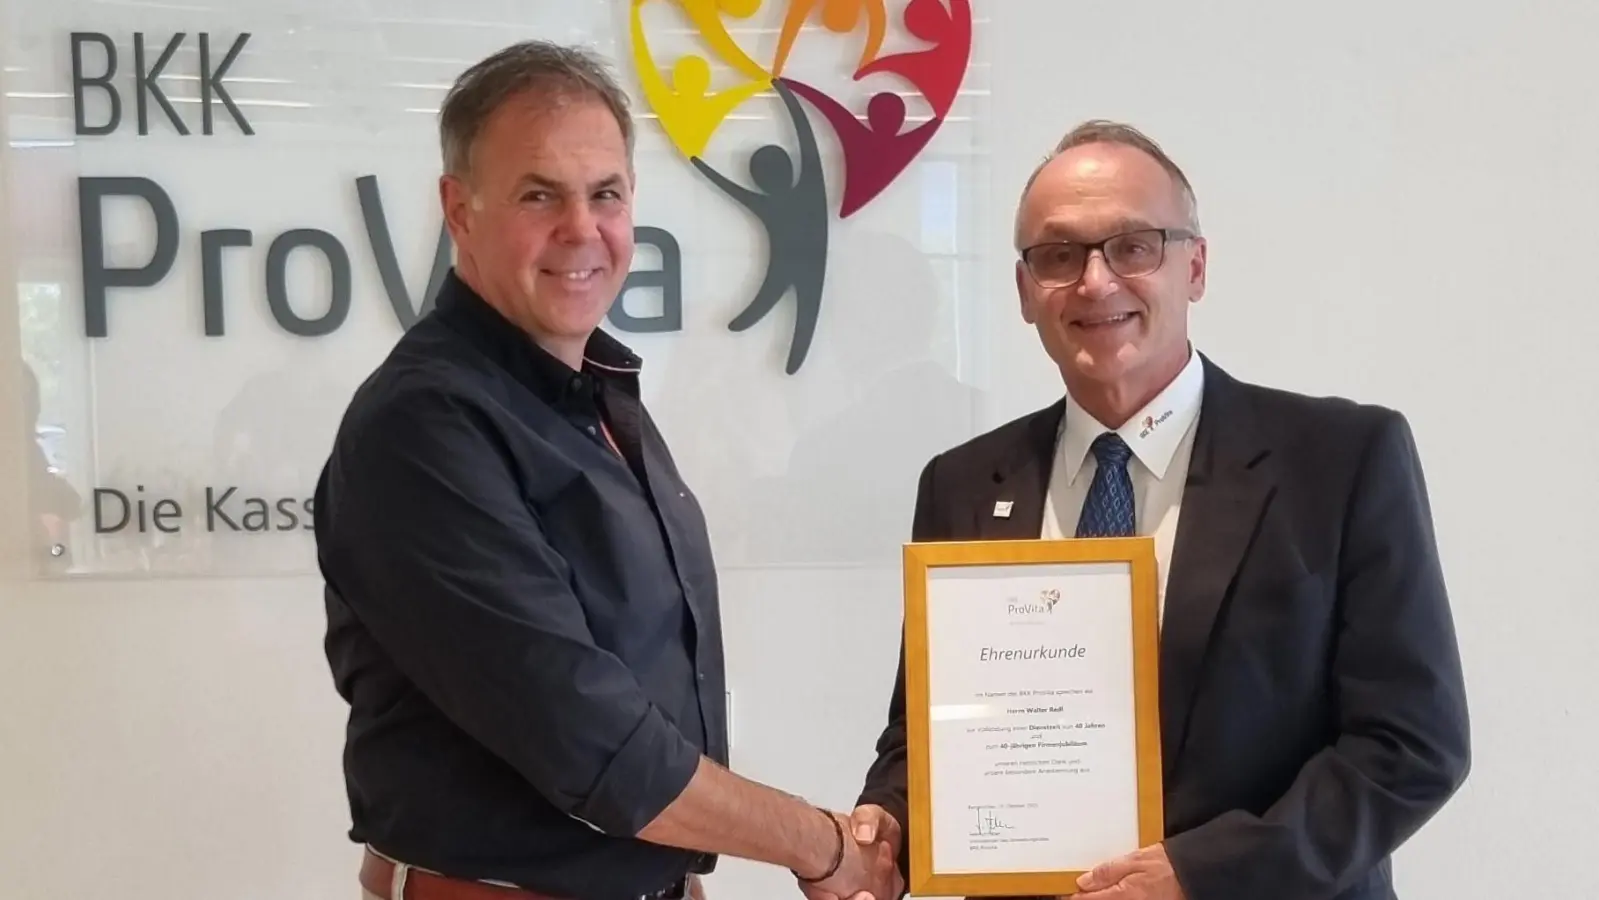 Verwaltungsratsvorsitzender Helmut Faber (li) gratuliert Walter Redl zu seinem 40-jährigen Firmenjubiläum bei der BKK ProVita. (Foto: BKK ProVita)